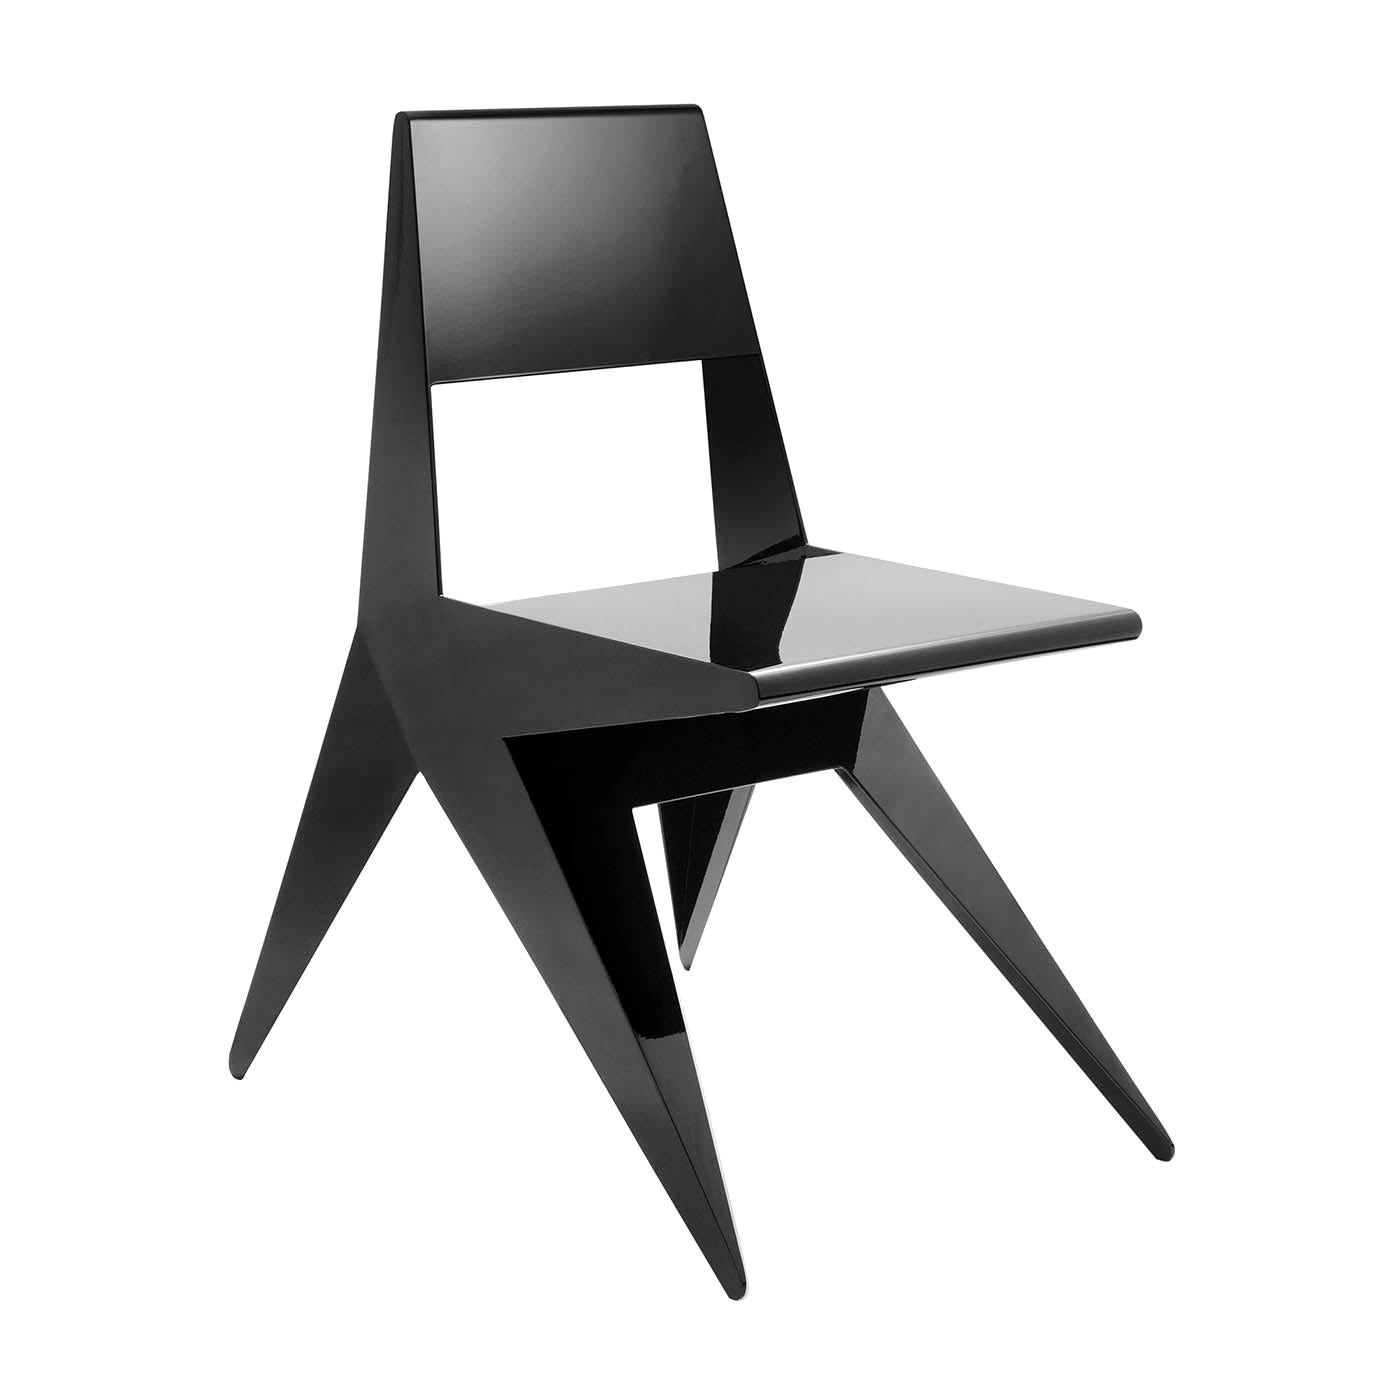 Star Black Chair by Antonio Pio Saracino